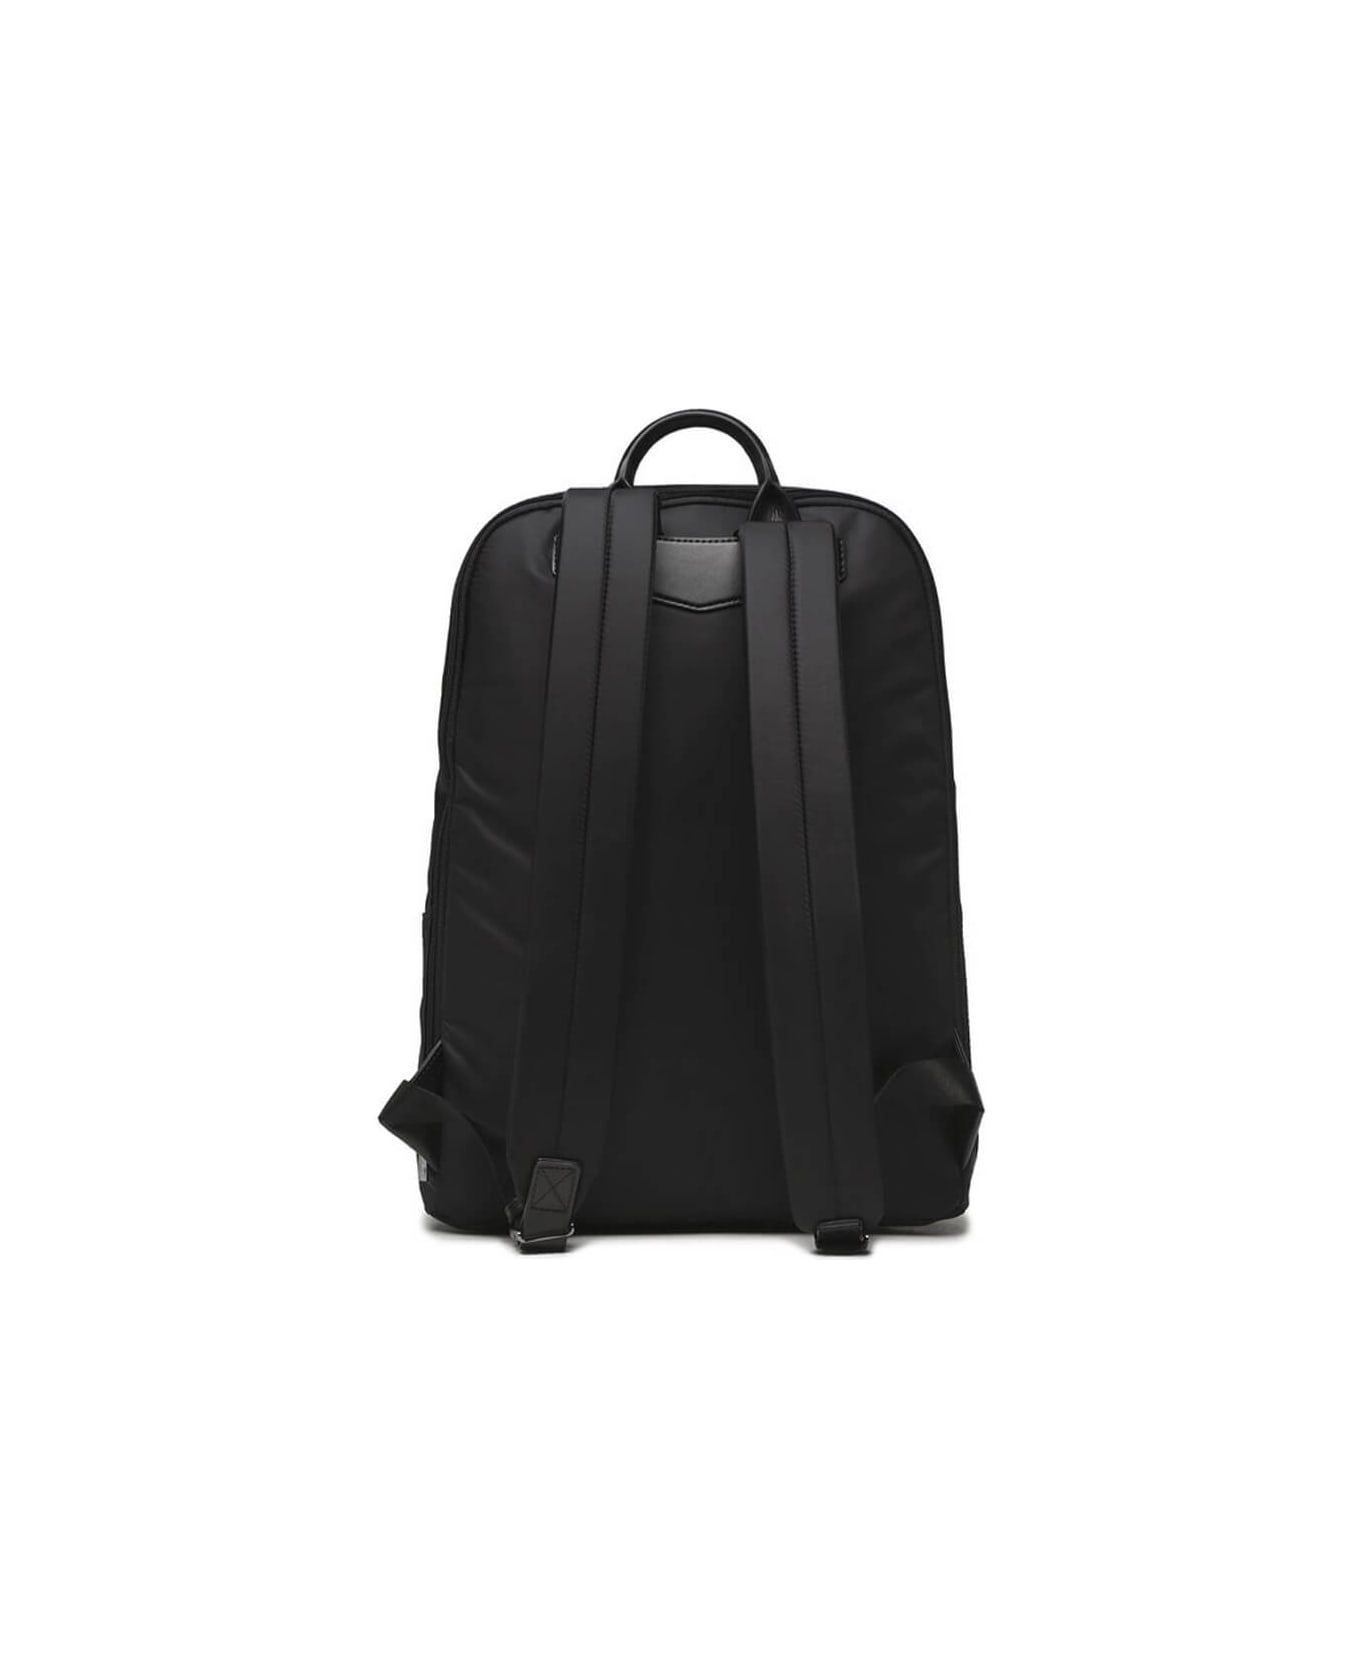 Emporio Armani Black Nylon Backpack - Nero